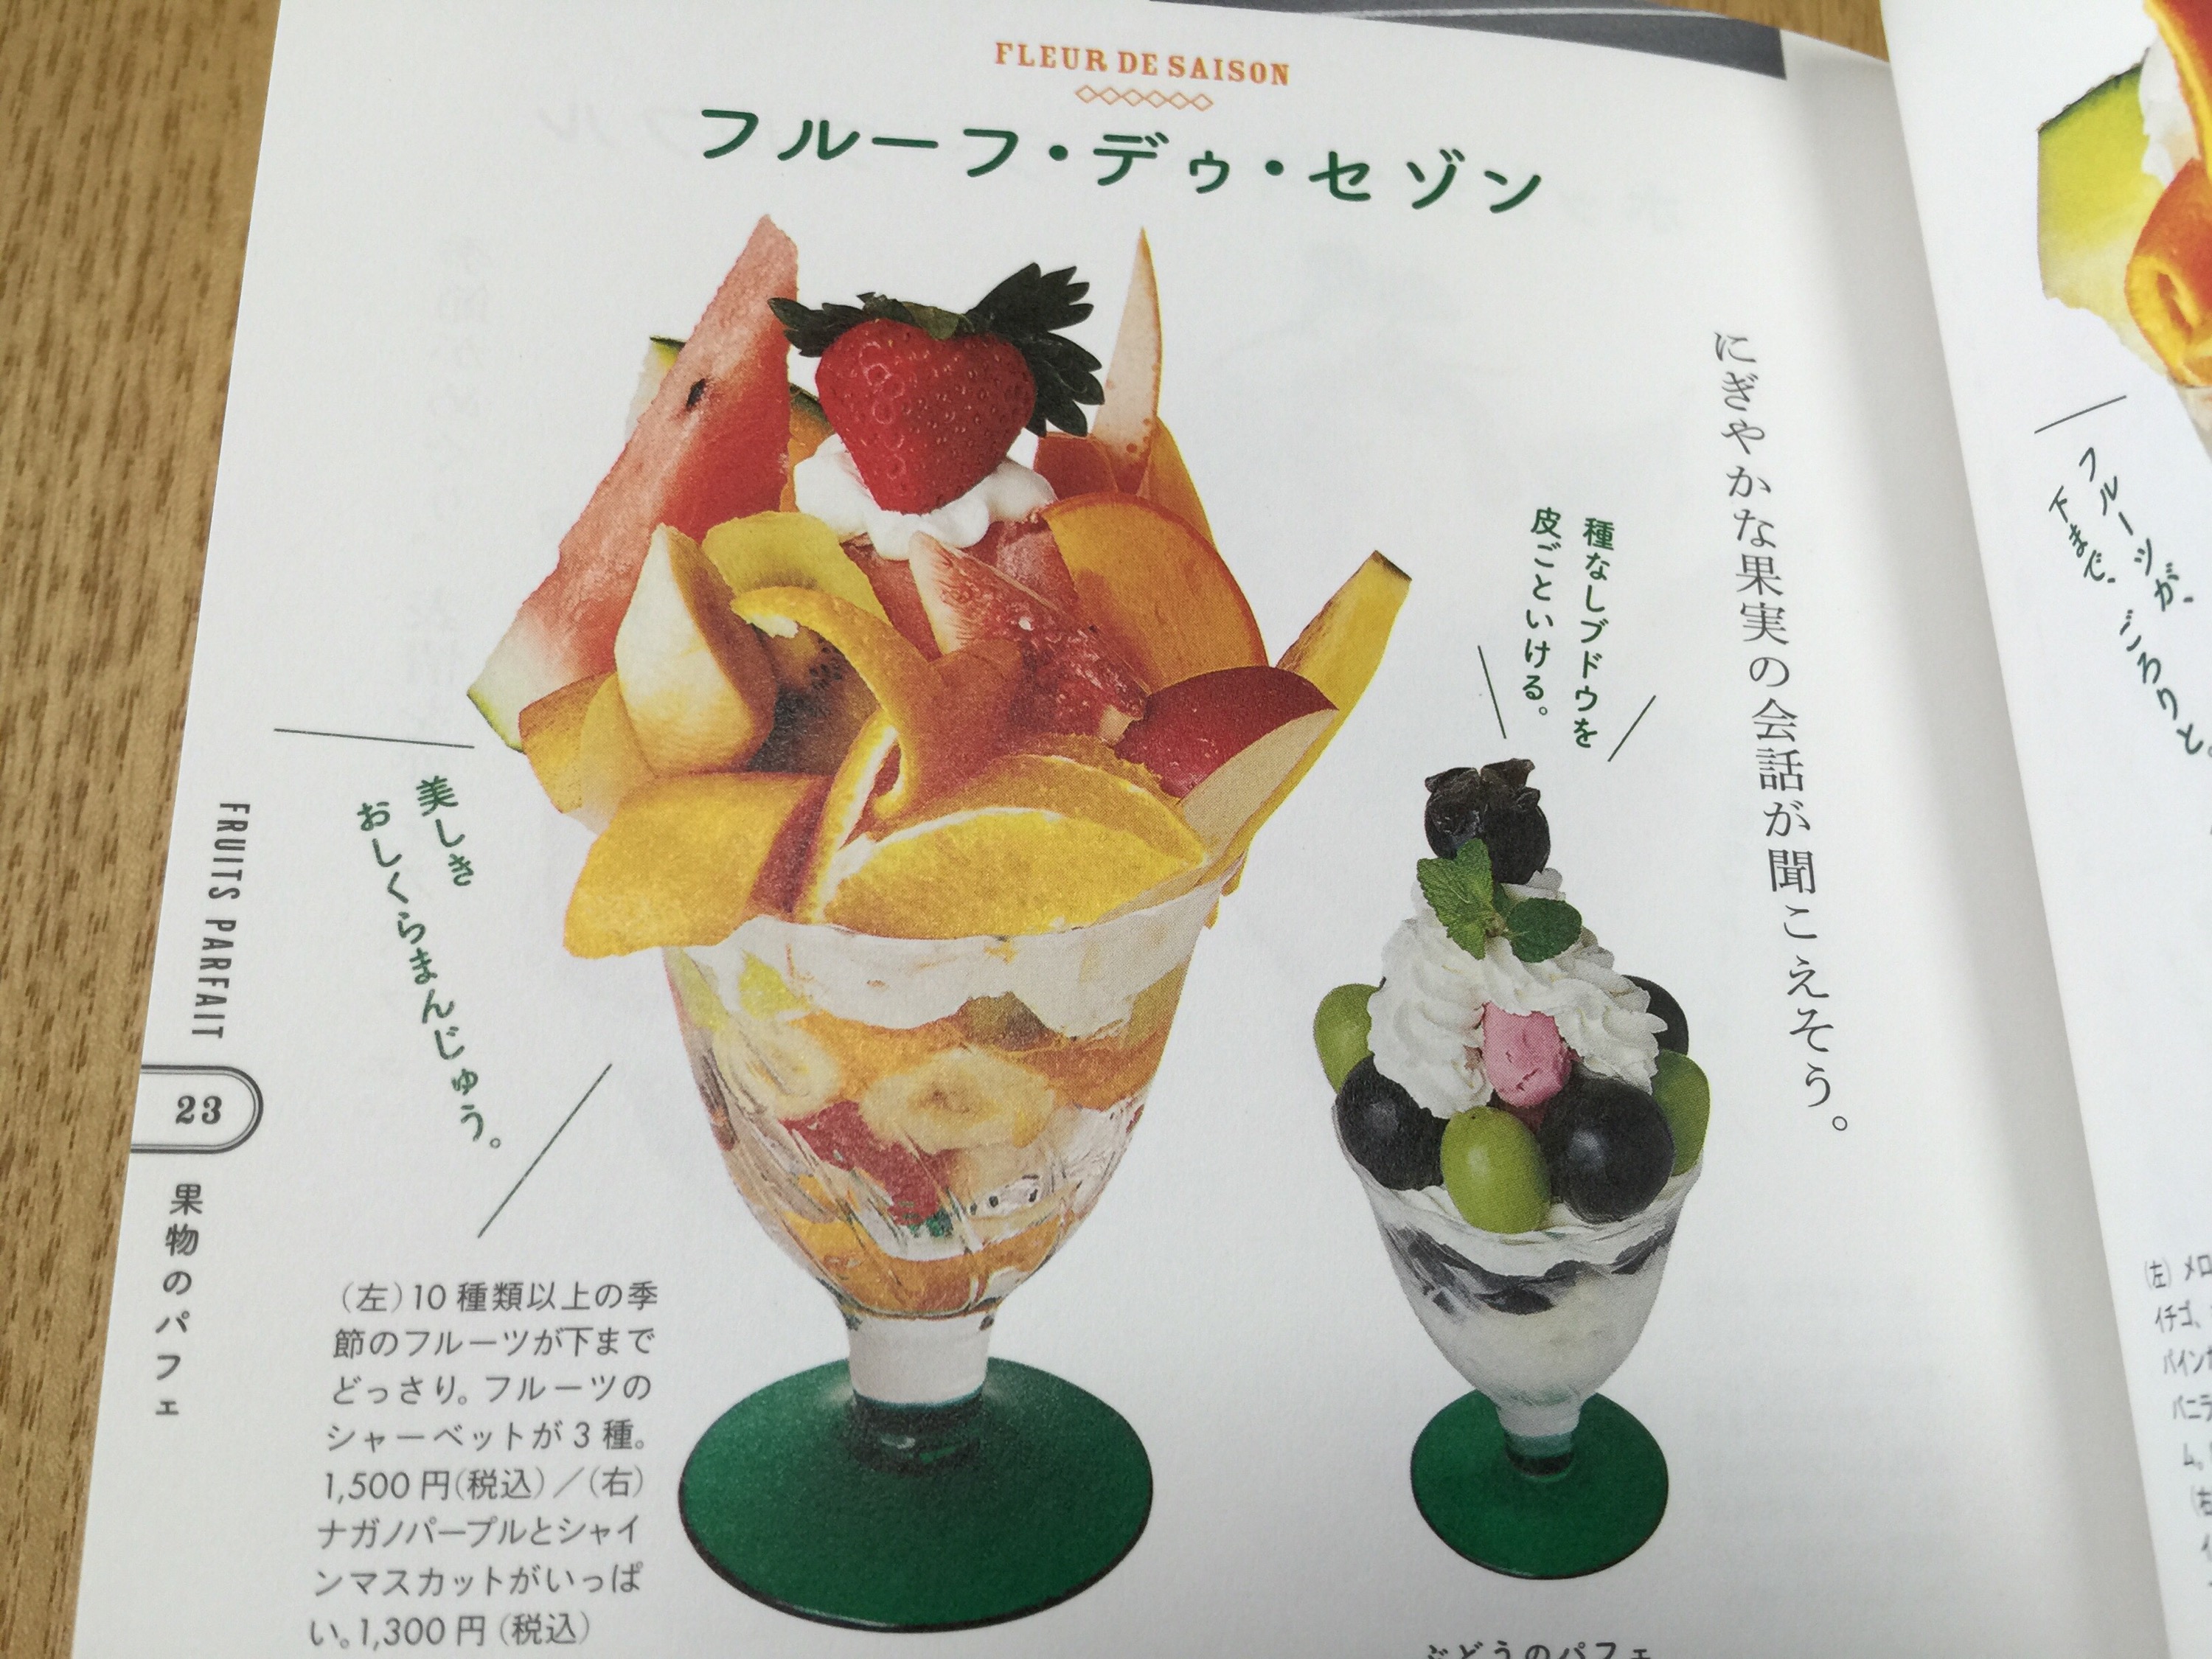 マニアックすぎる 東京パフェ学 で自分の食べたいパフェを知る Makkyon Web